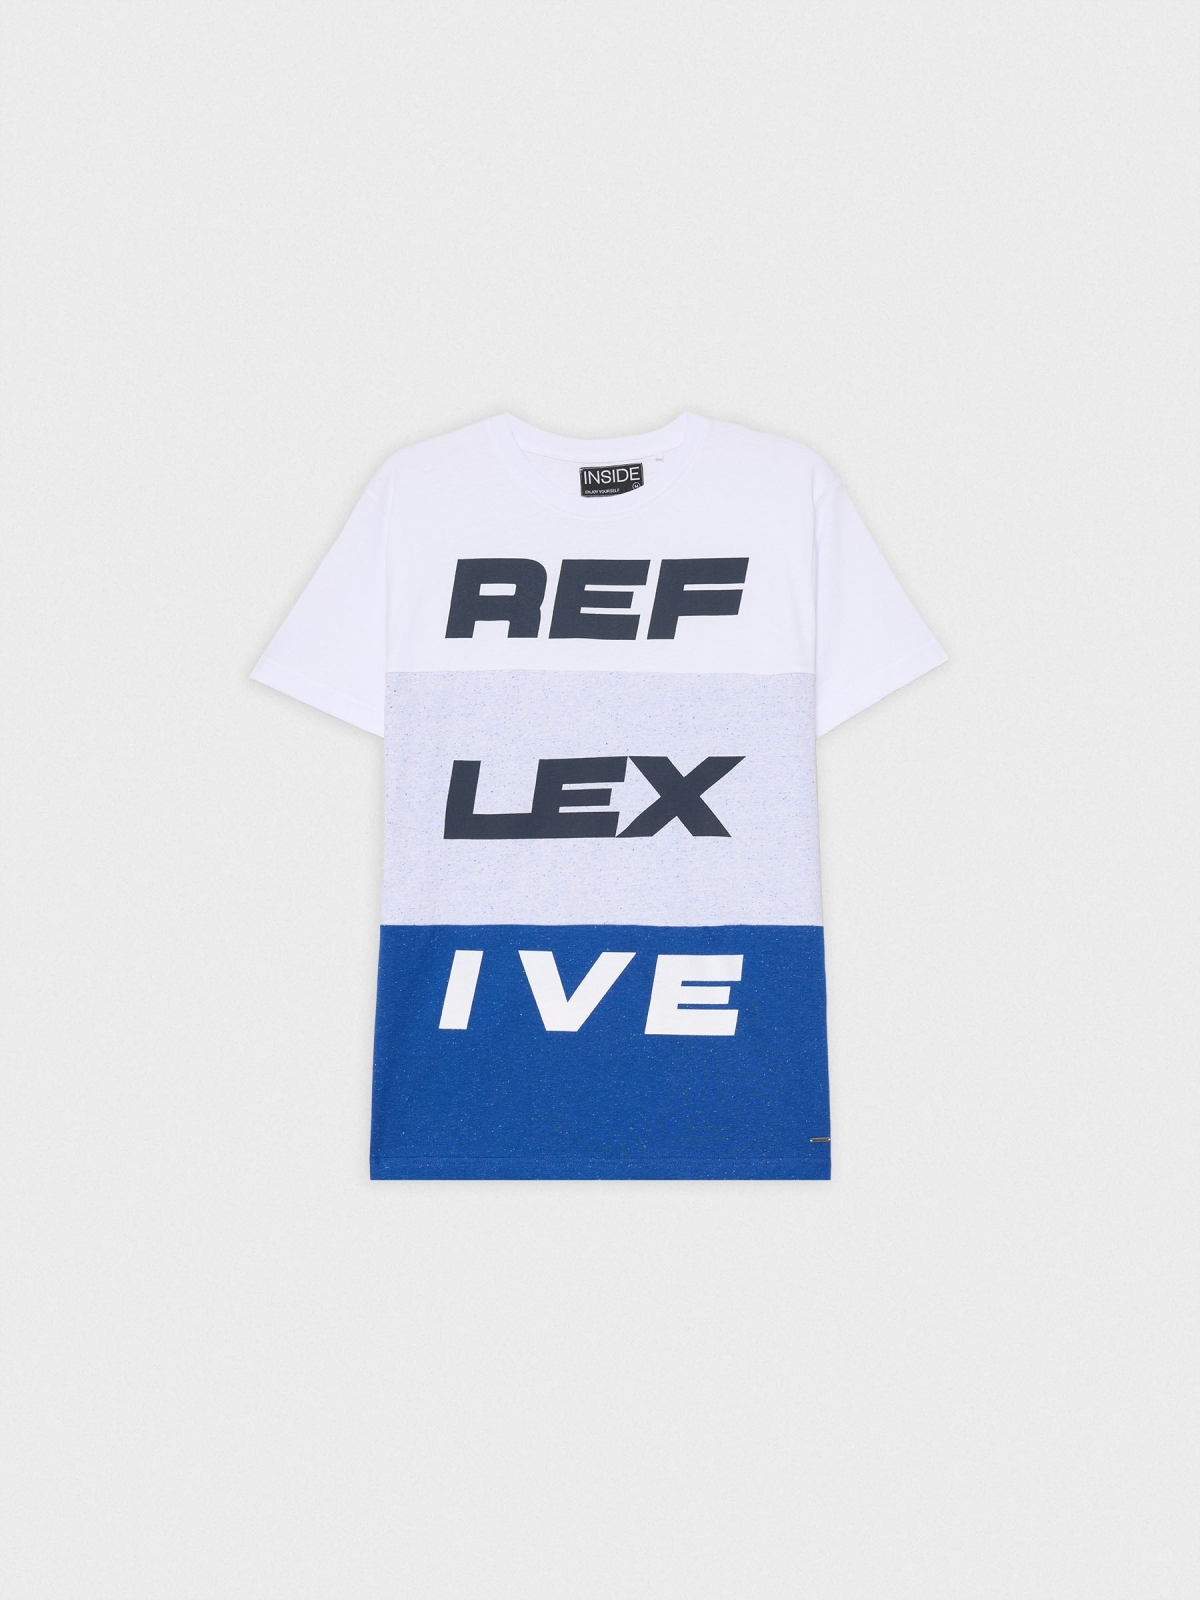  T-shirt REF LEX IVE azul